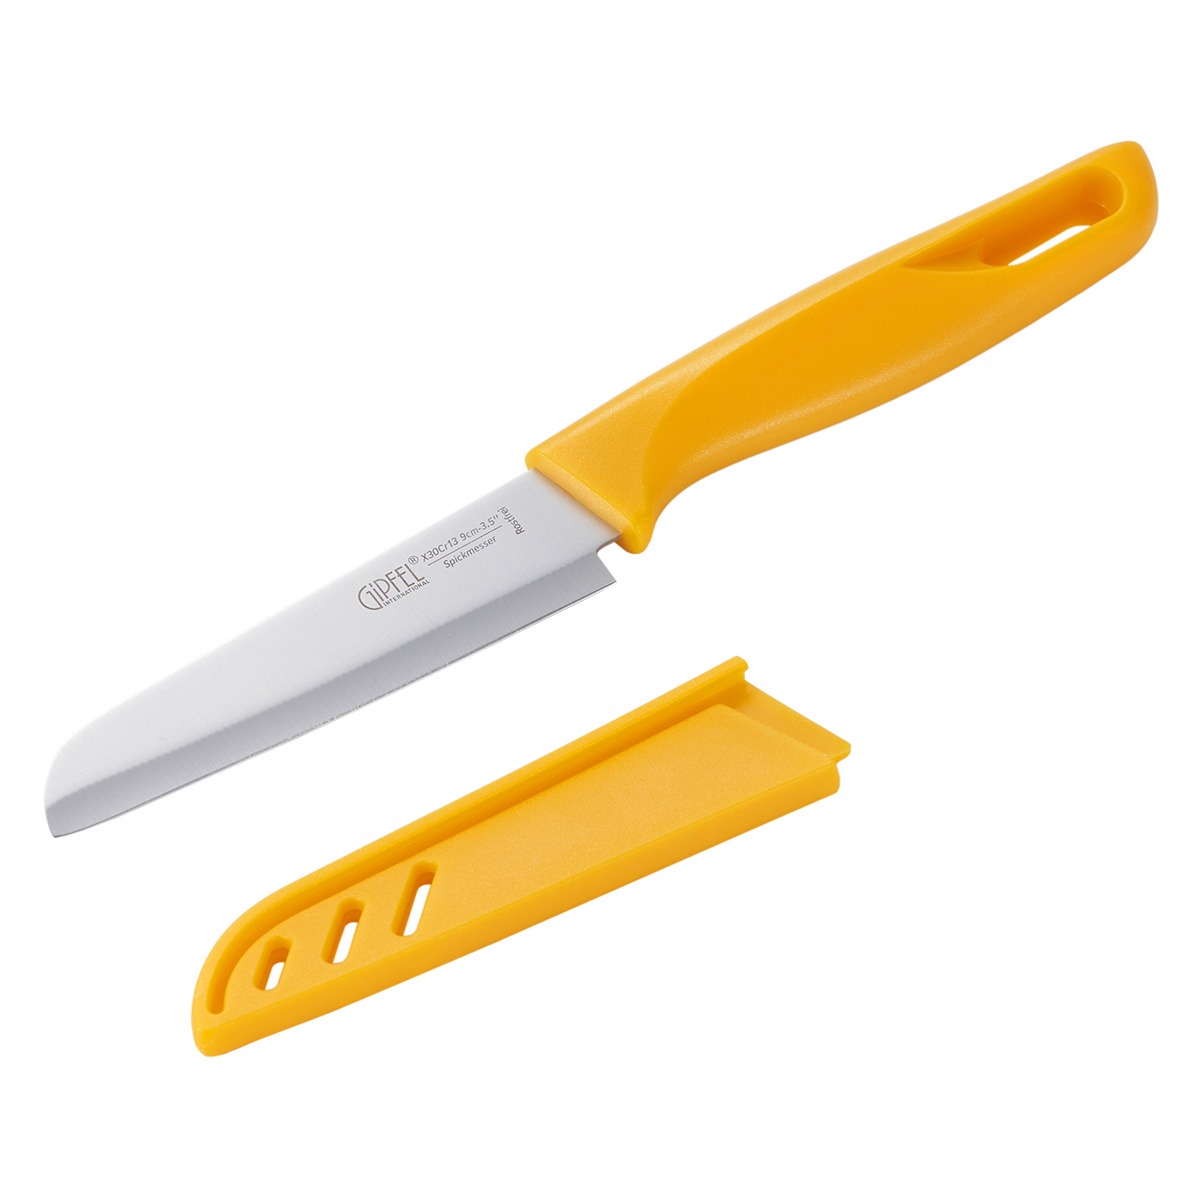 Нож для чистки овощей Gipfel Sorti стальной желтый 9 см нож для чистки овощей gipfel sorti 52033 9 см